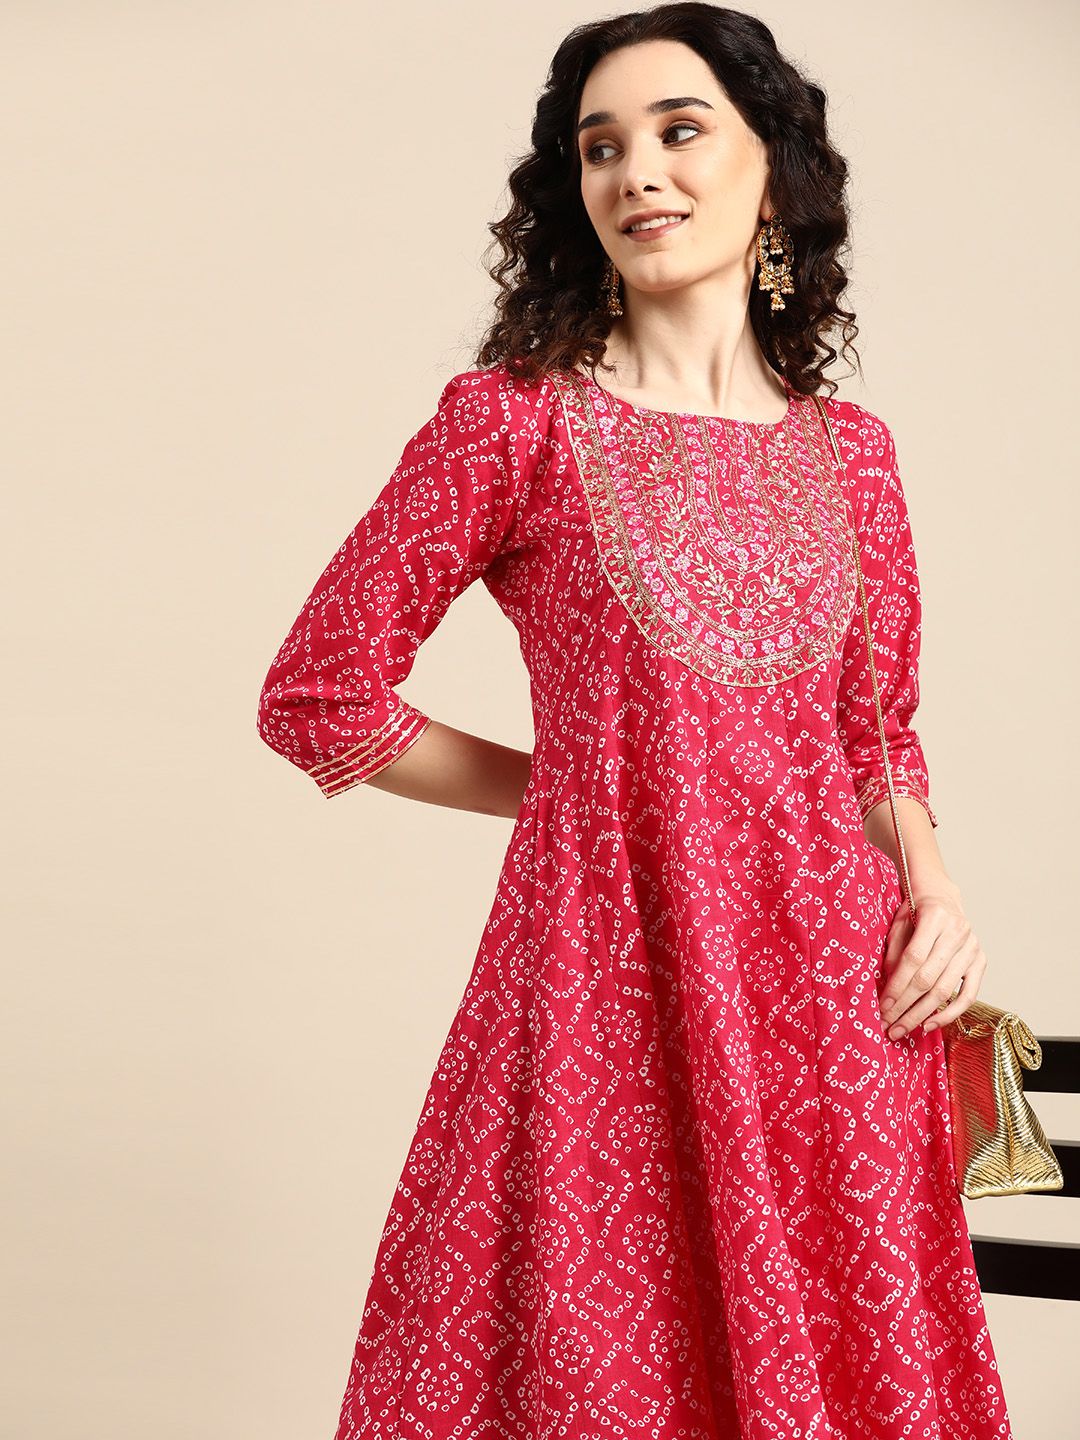 Sangria Pink Bandhani Printed Ethnic Maxi Dress Price in India